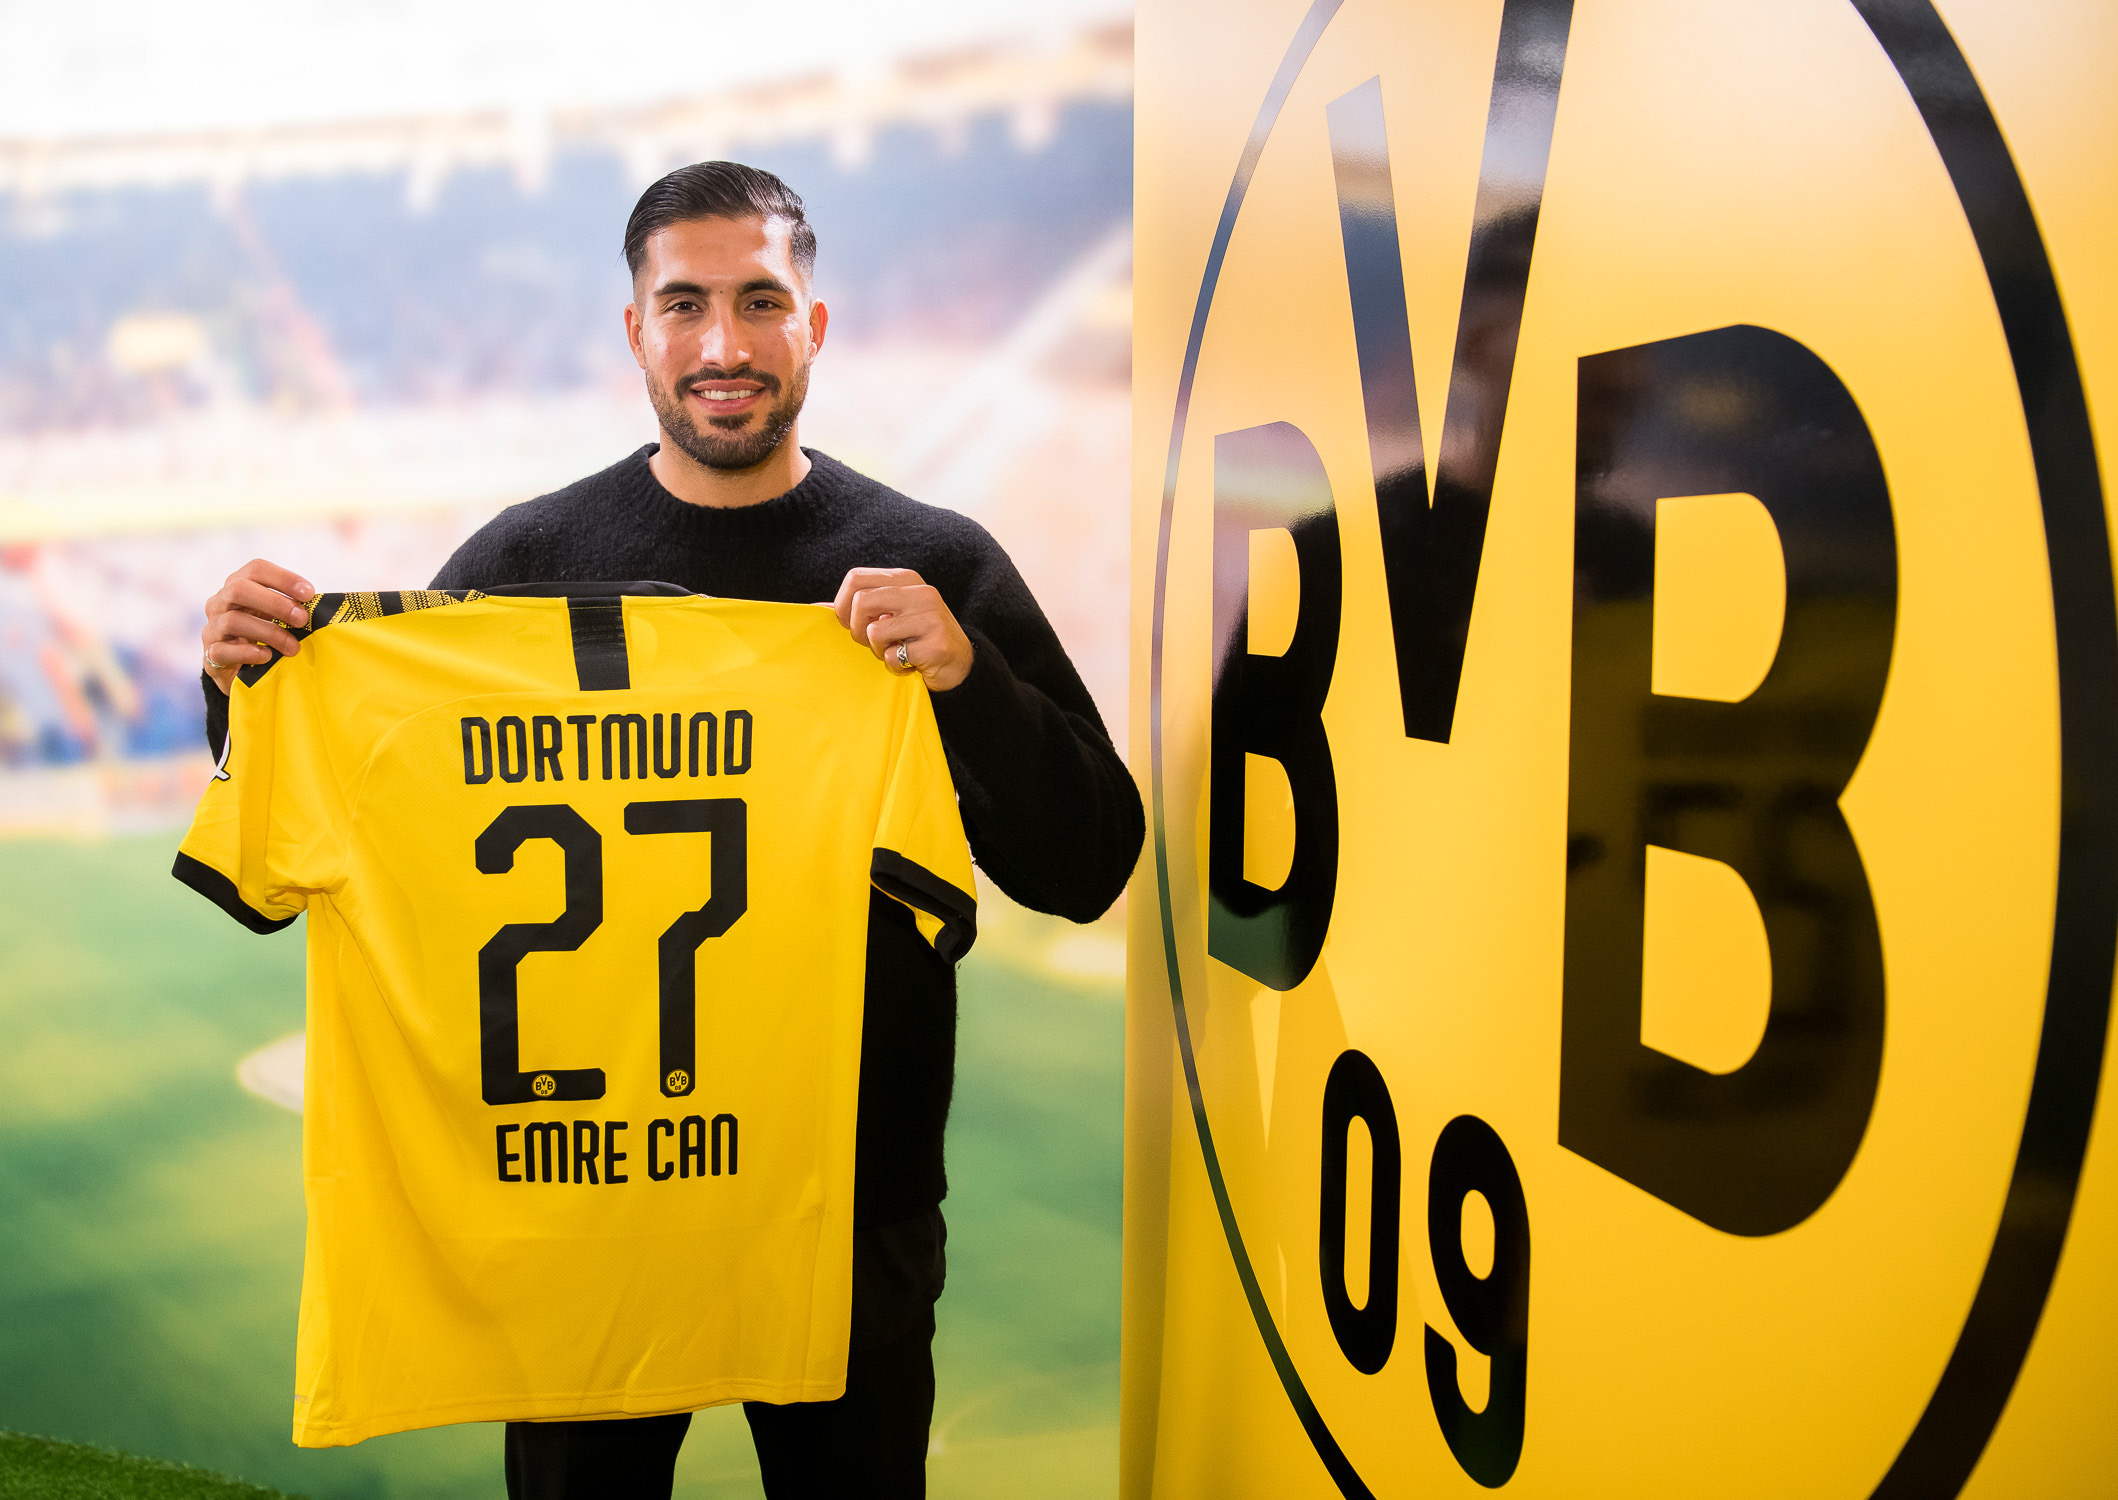 ESQUENTOU - O Borussia Dortmund não está satisfeito com o desempenho de Emre Can e deseja vender o jogador em junho, aceitando qualquer boa proposta pelo meia que não agrada a diretoria na temporada, conforme o BILD.